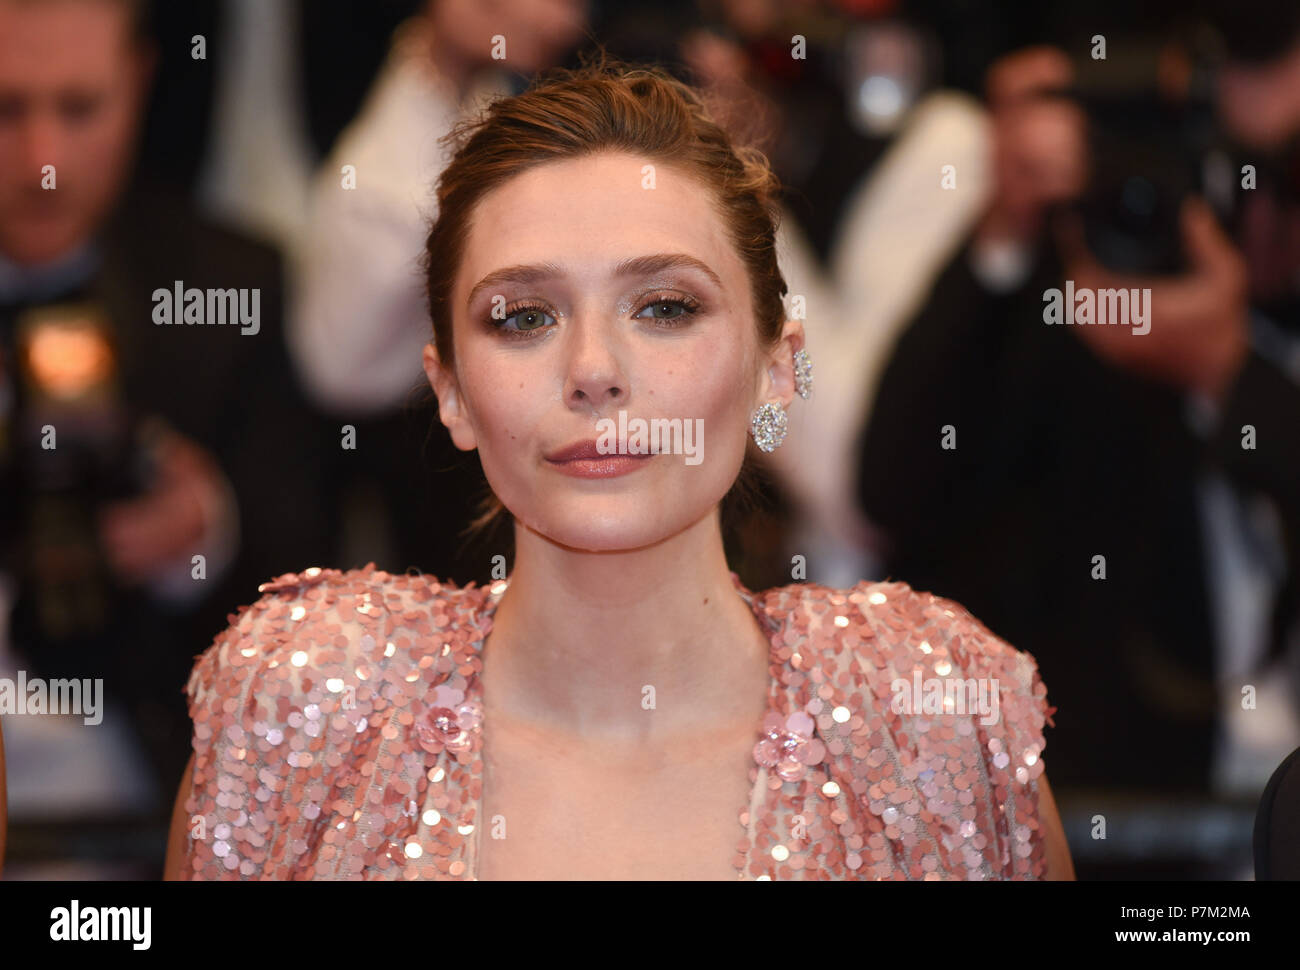 Mai 20, 2017 - Cannes, Frankreich: Elizabeth Olsen nimmt am "Hauptplatz" Premiere während des 70. Filmfestival in Cannes. Elizabeth Olsen lors du 70eme Festival de Cannes. *** Frankreich/KEINE VERKÄUFE IN DEN FRANZÖSISCHEN MEDIEN *** Stockfoto